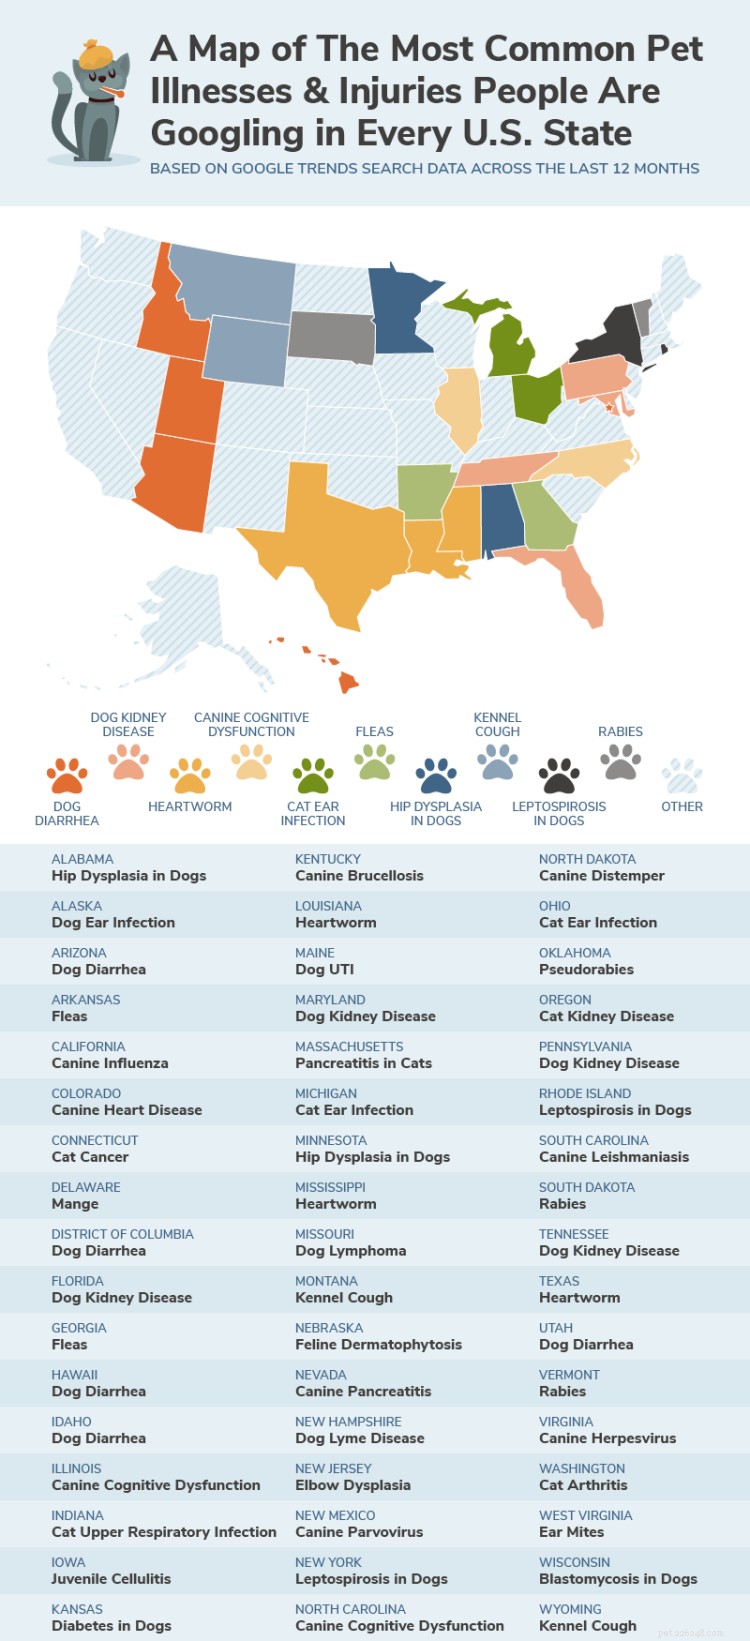 Болезни и травмы домашних животных, наиболее часто запрашиваемые в каждом штате США на основе тенденций поиска Google